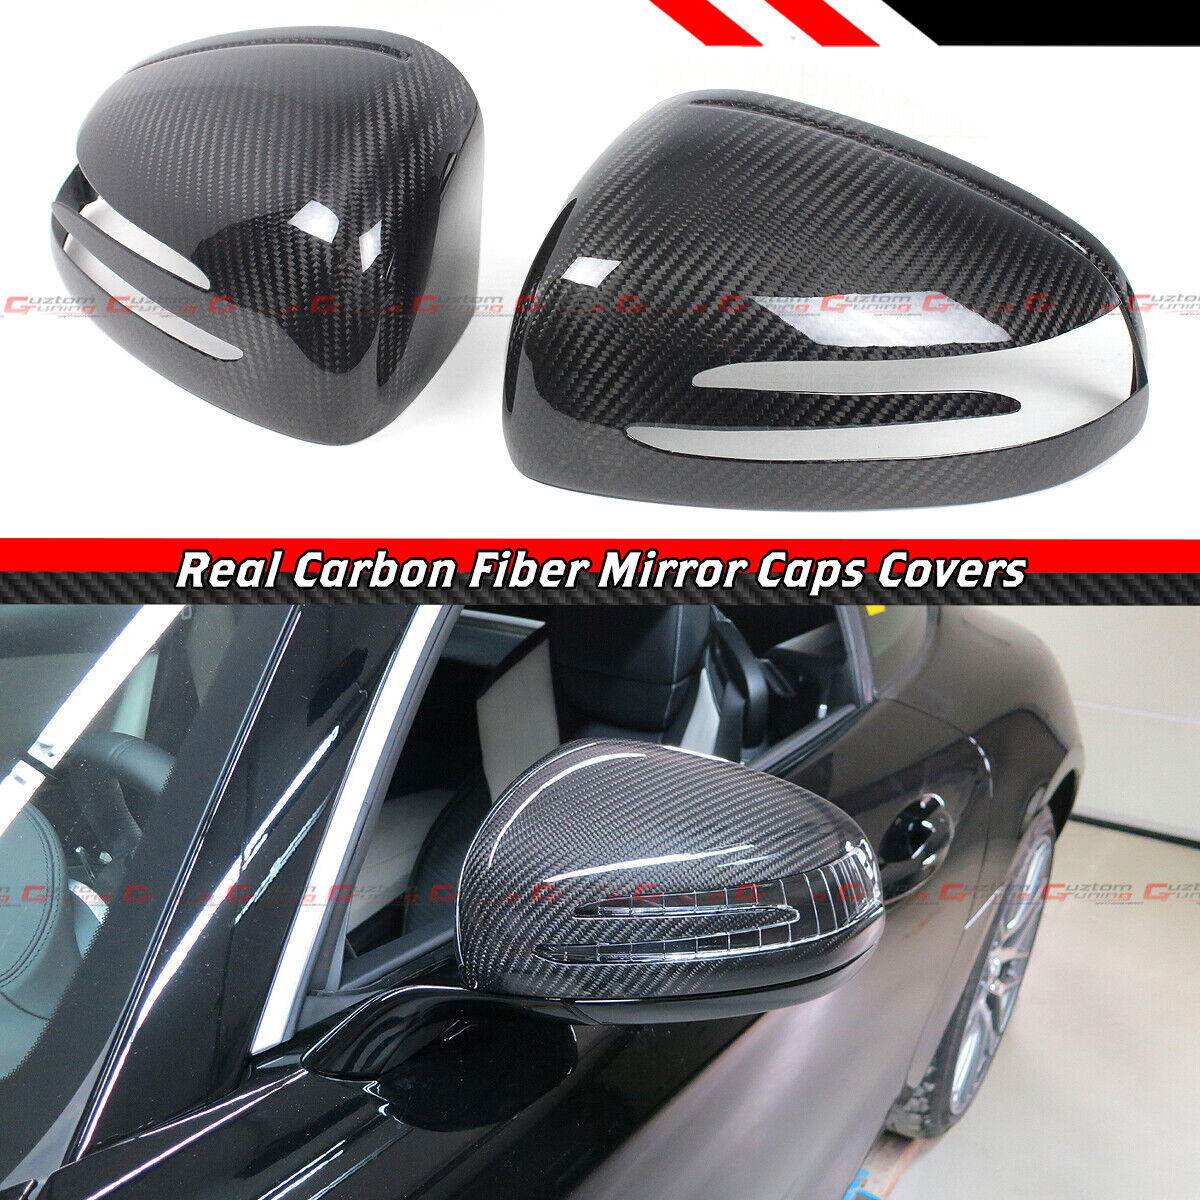 FOR MERCEDEZ BENZ R172 SLK SLC SL AMG GT REAL CARBON FIBER SIDE MIRROR COVER CAP